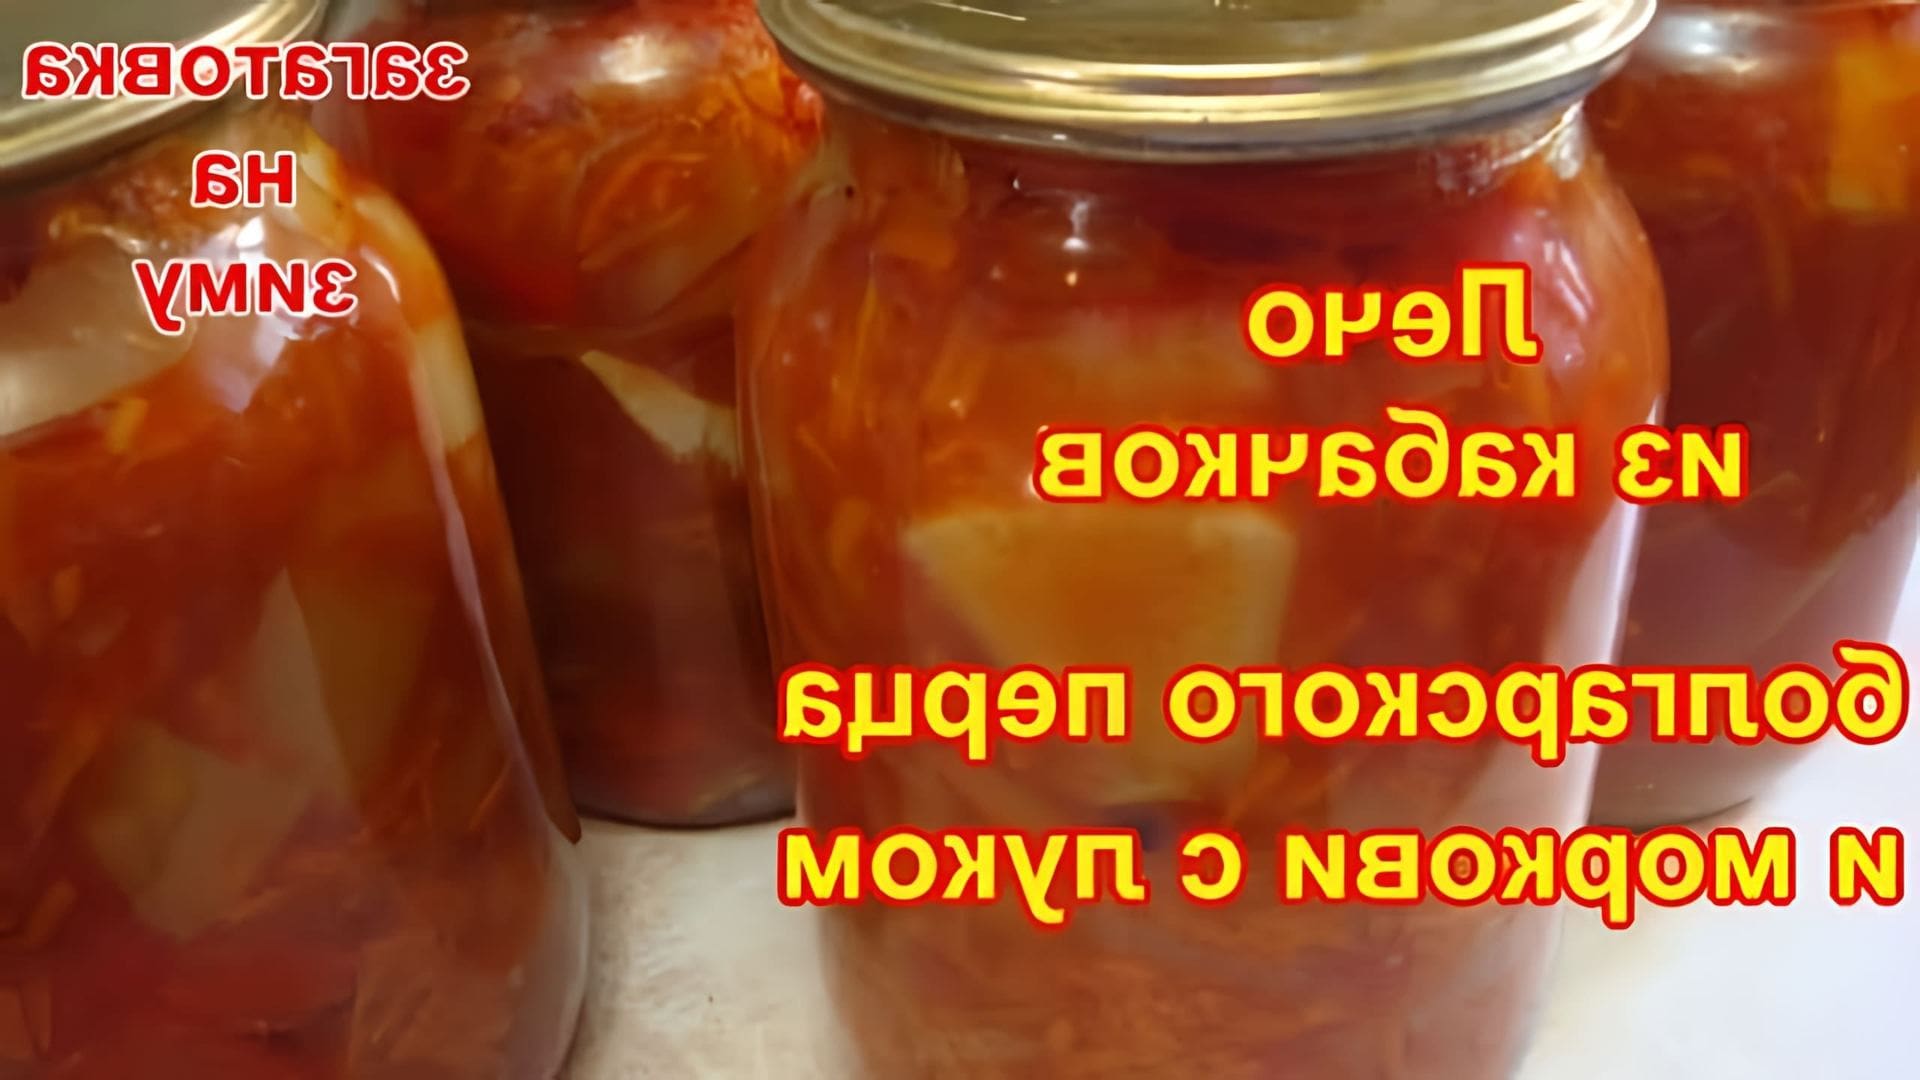 В этом видео демонстрируется процесс приготовления лечо из кабачков, болгарского перца и моркови